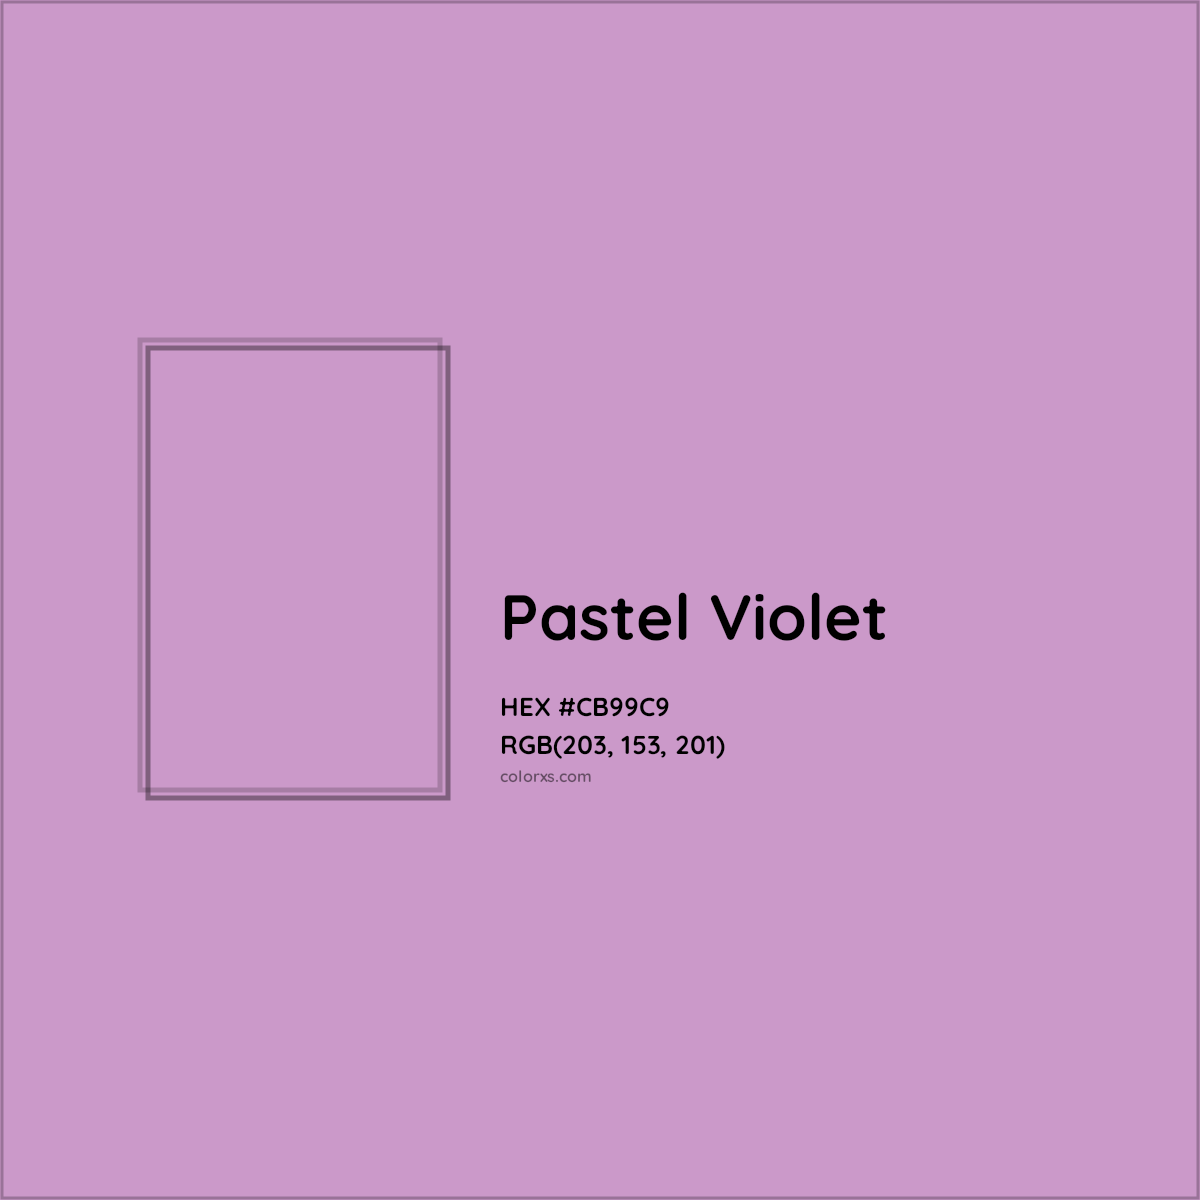 HEX #CB99C9 Pastel Violet Color - Color Code